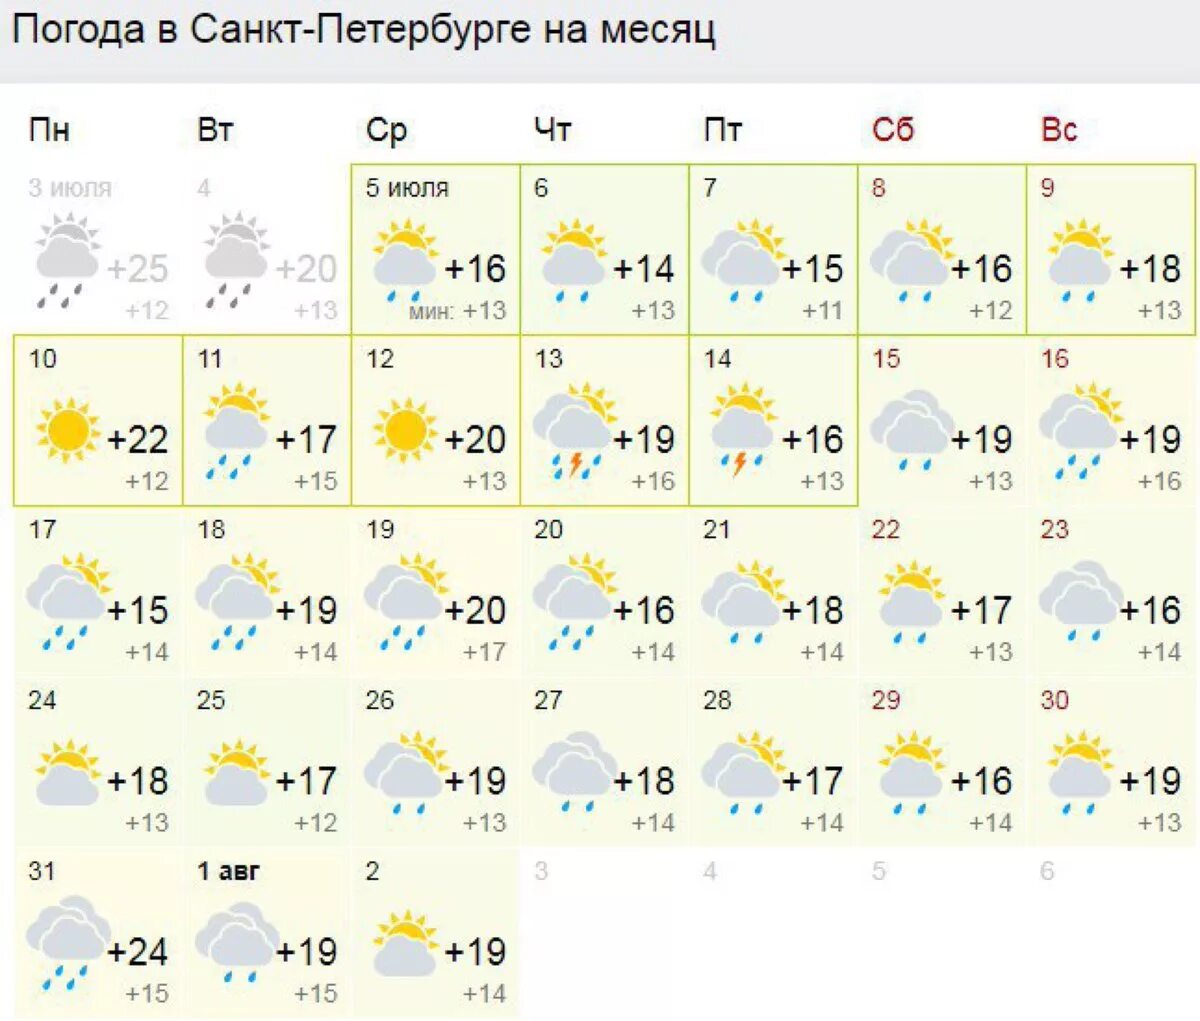 Погода июль нижний. Погода СПБ. Погода в Питере на месяц. Погода в Санкт-Петербурге сейчас. Погода в Питере на июль.